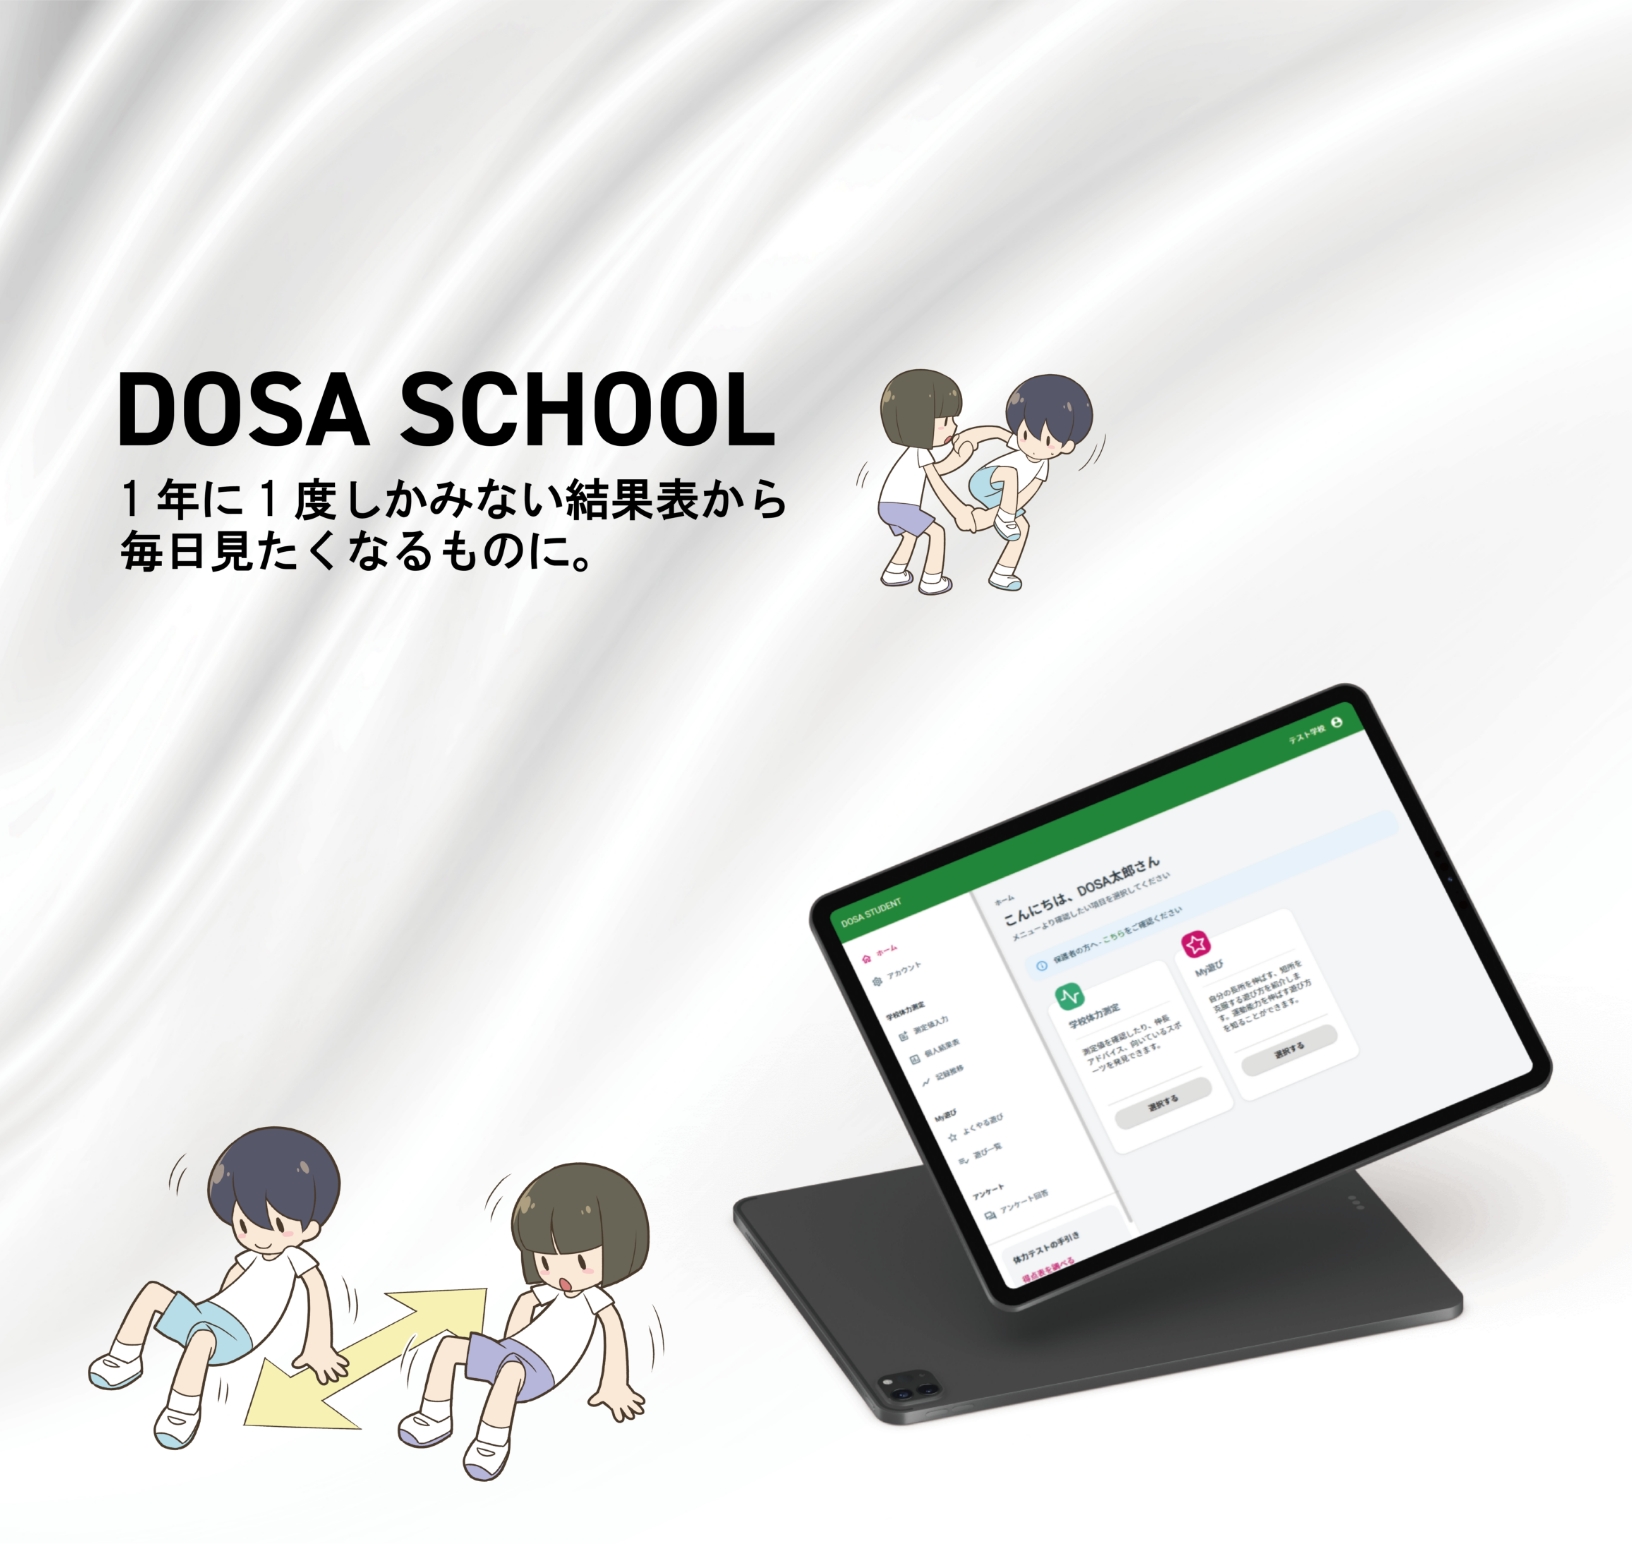 学校で運動遊び指導！（わくわく先生派遣事業）神奈川県内の子どもの運動習慣形成に『DOSA SCHOOL』が貢献